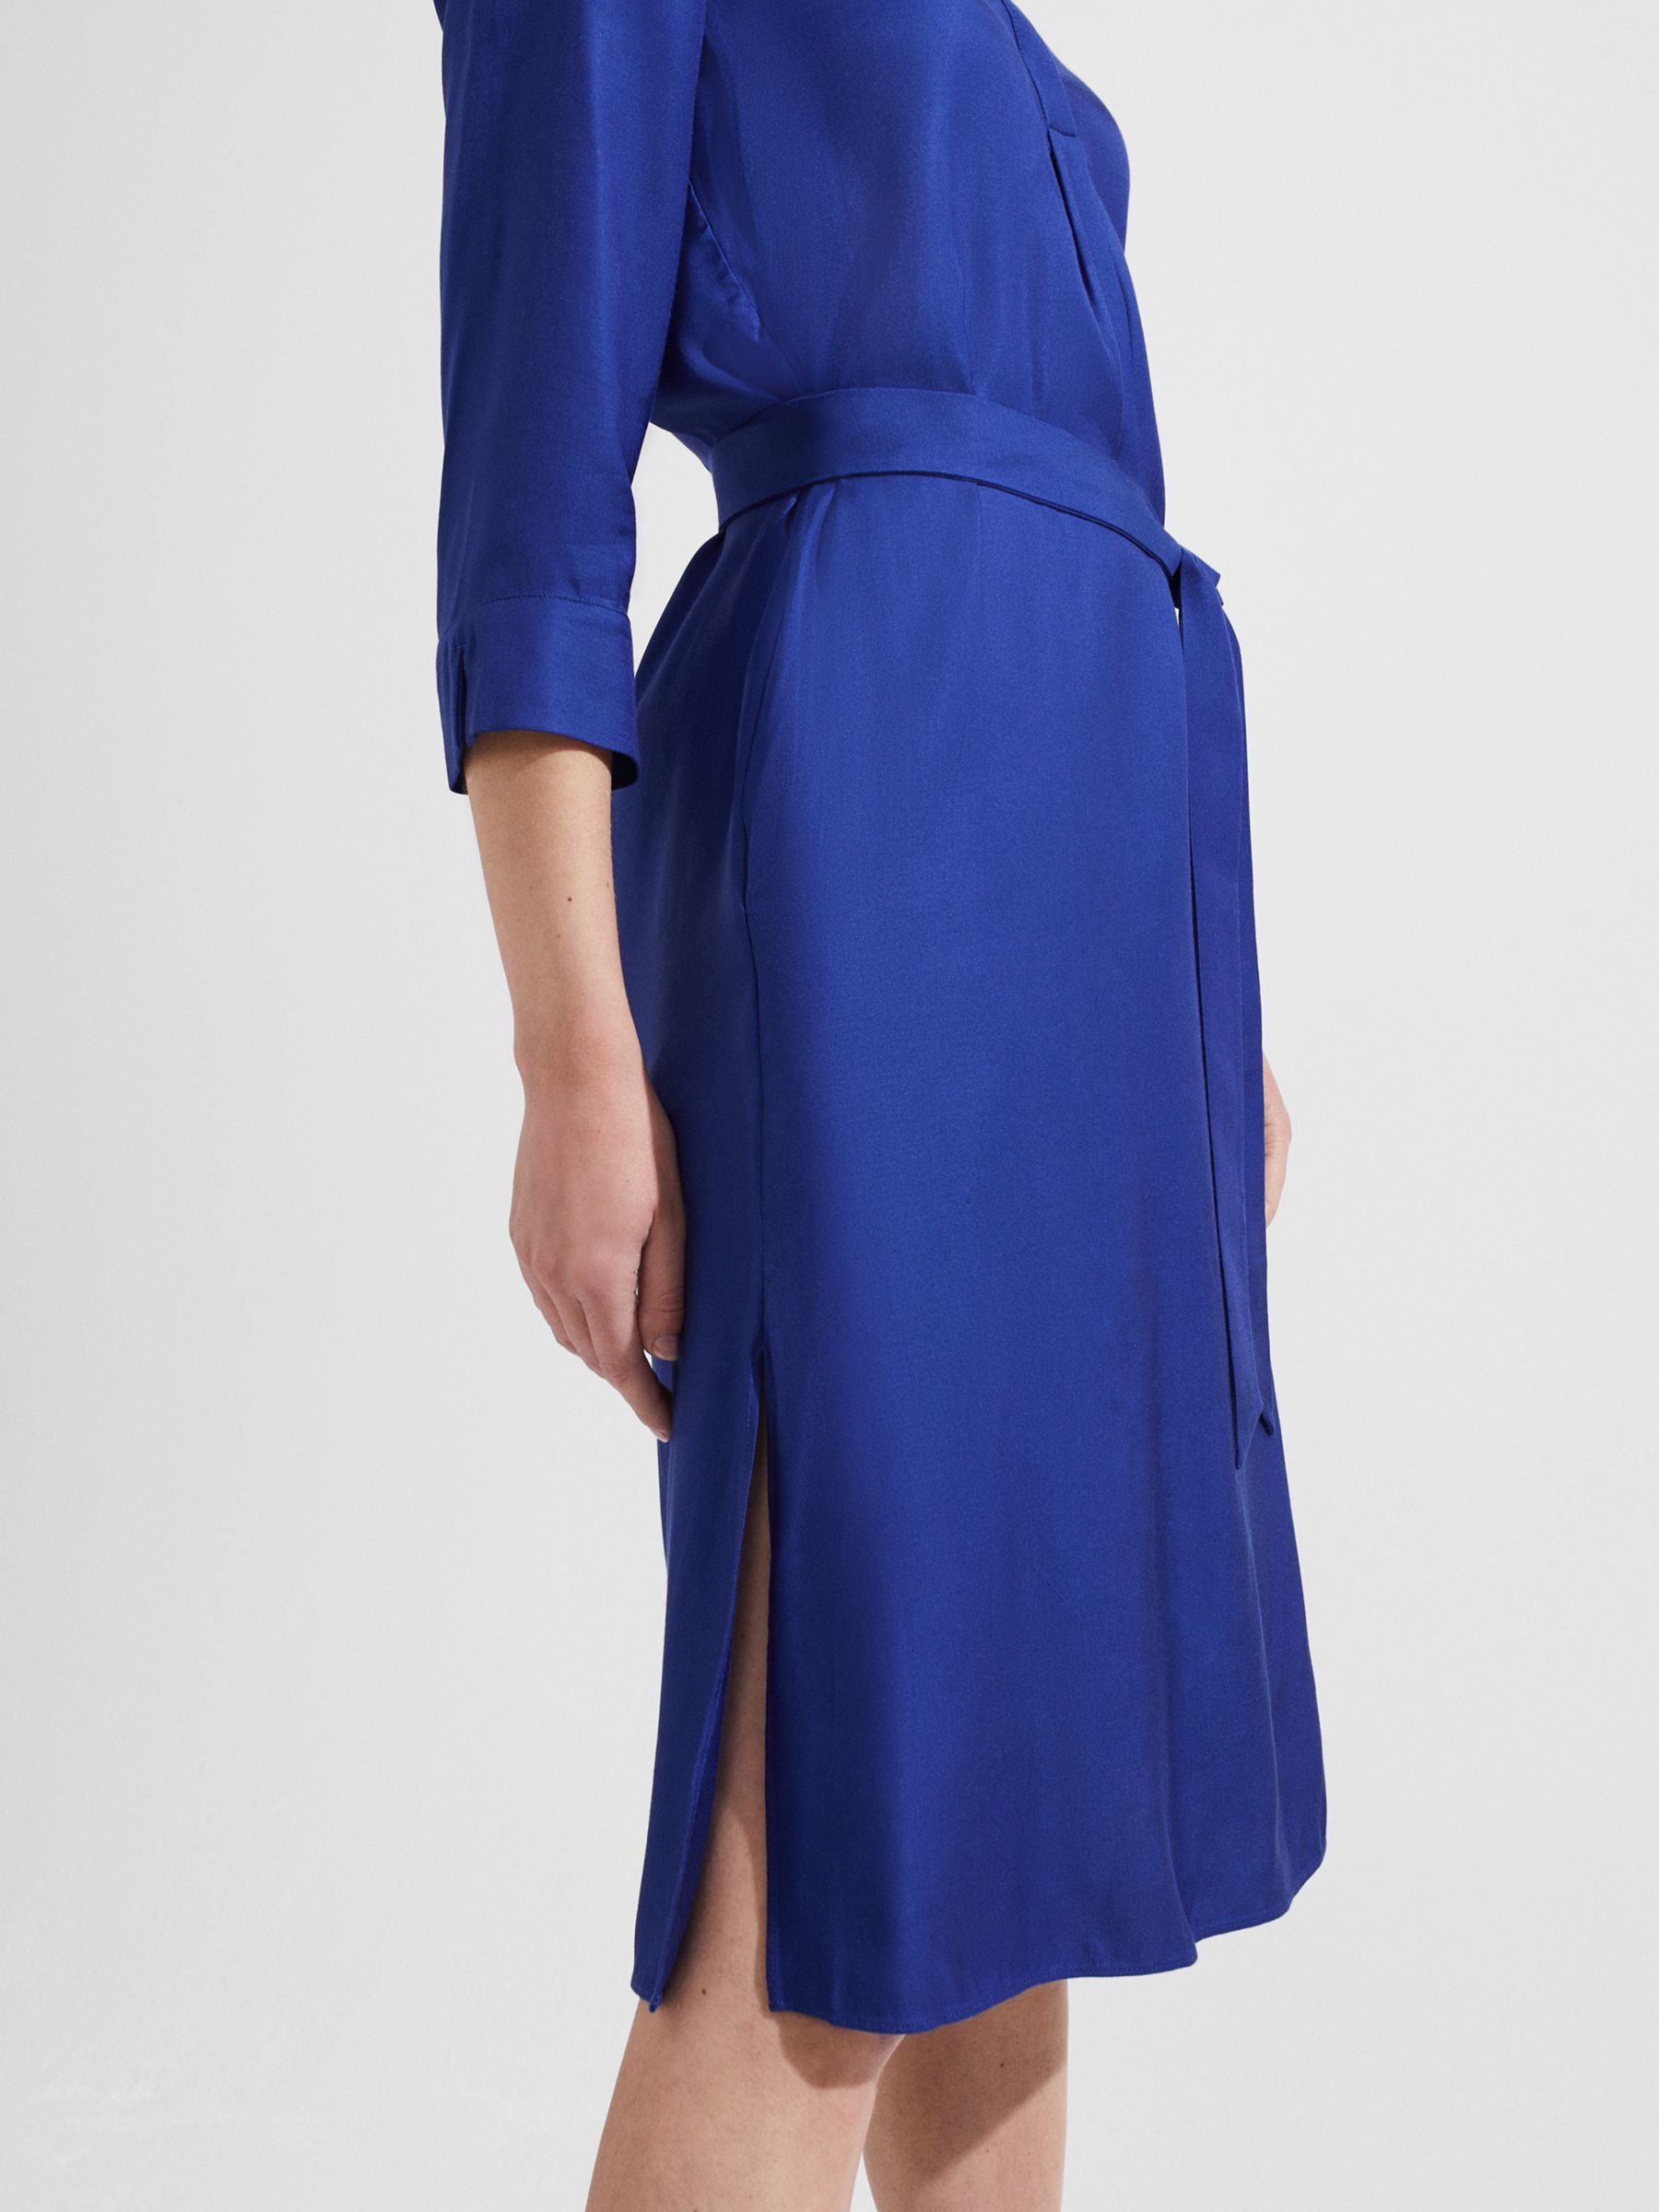 Hobbs Sara Shirt Dress, Deep Blue at John Lewis & Partners